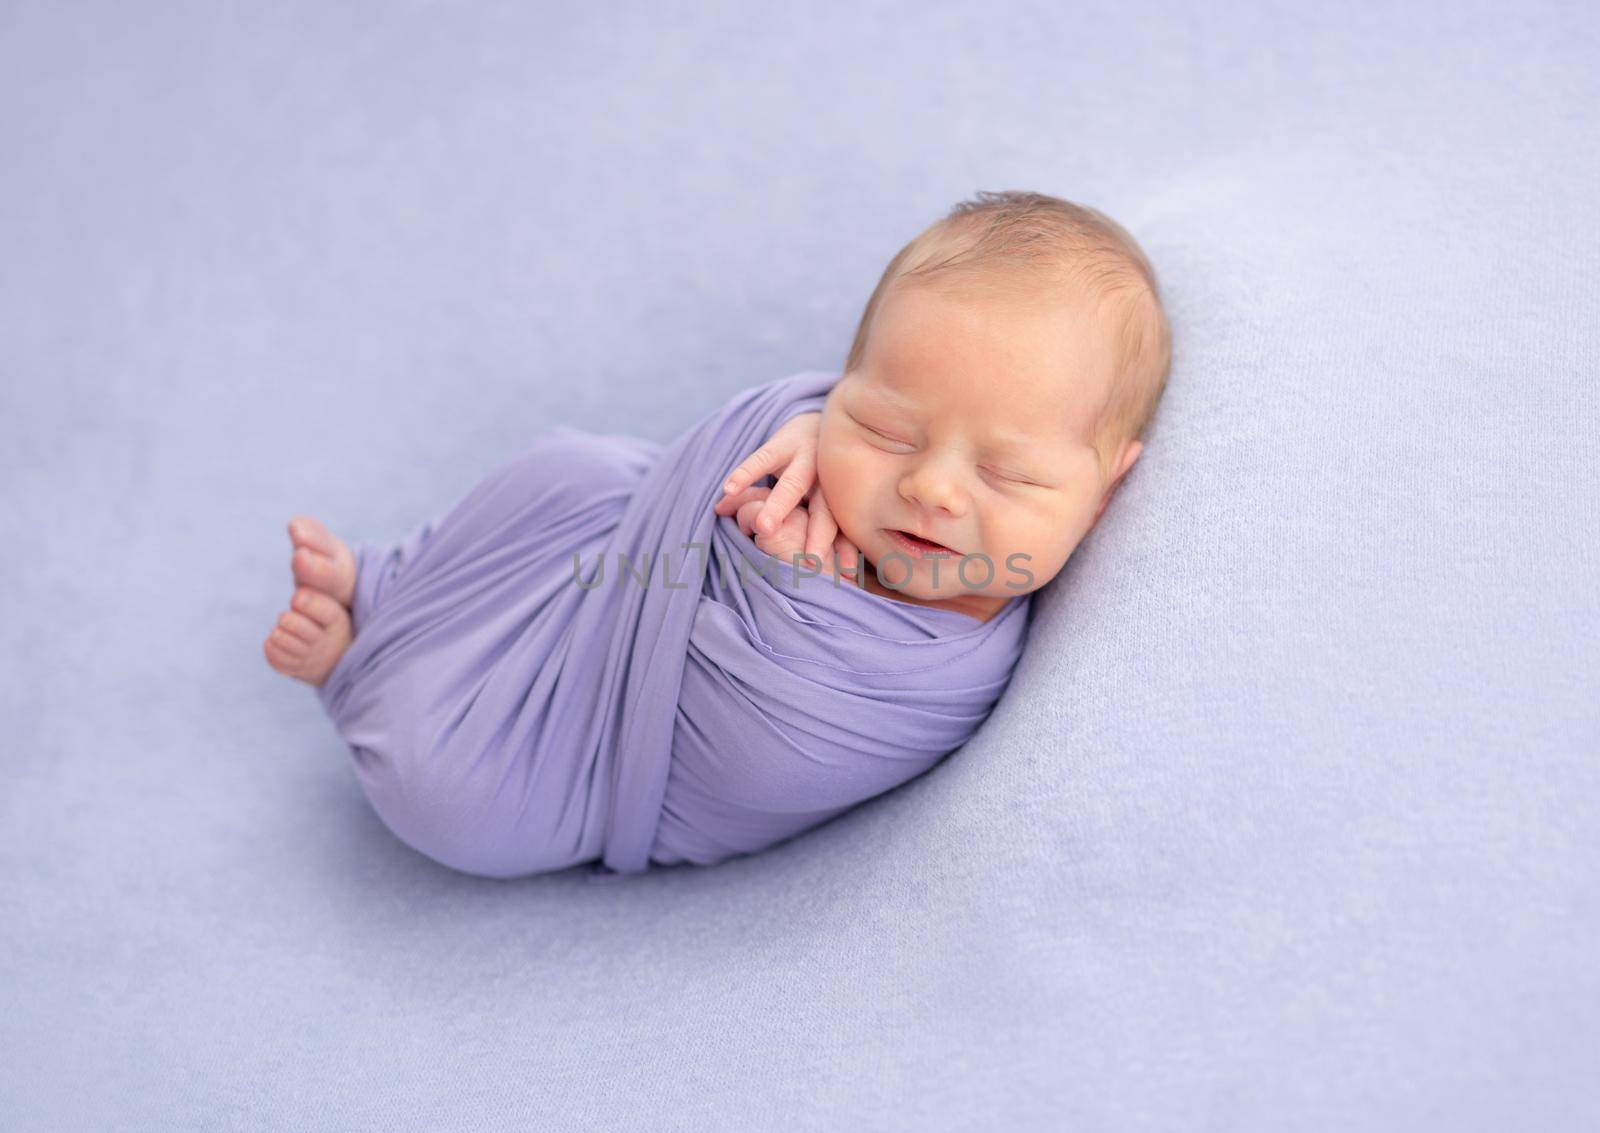 Newborn wrapped in blanket by tan4ikk1